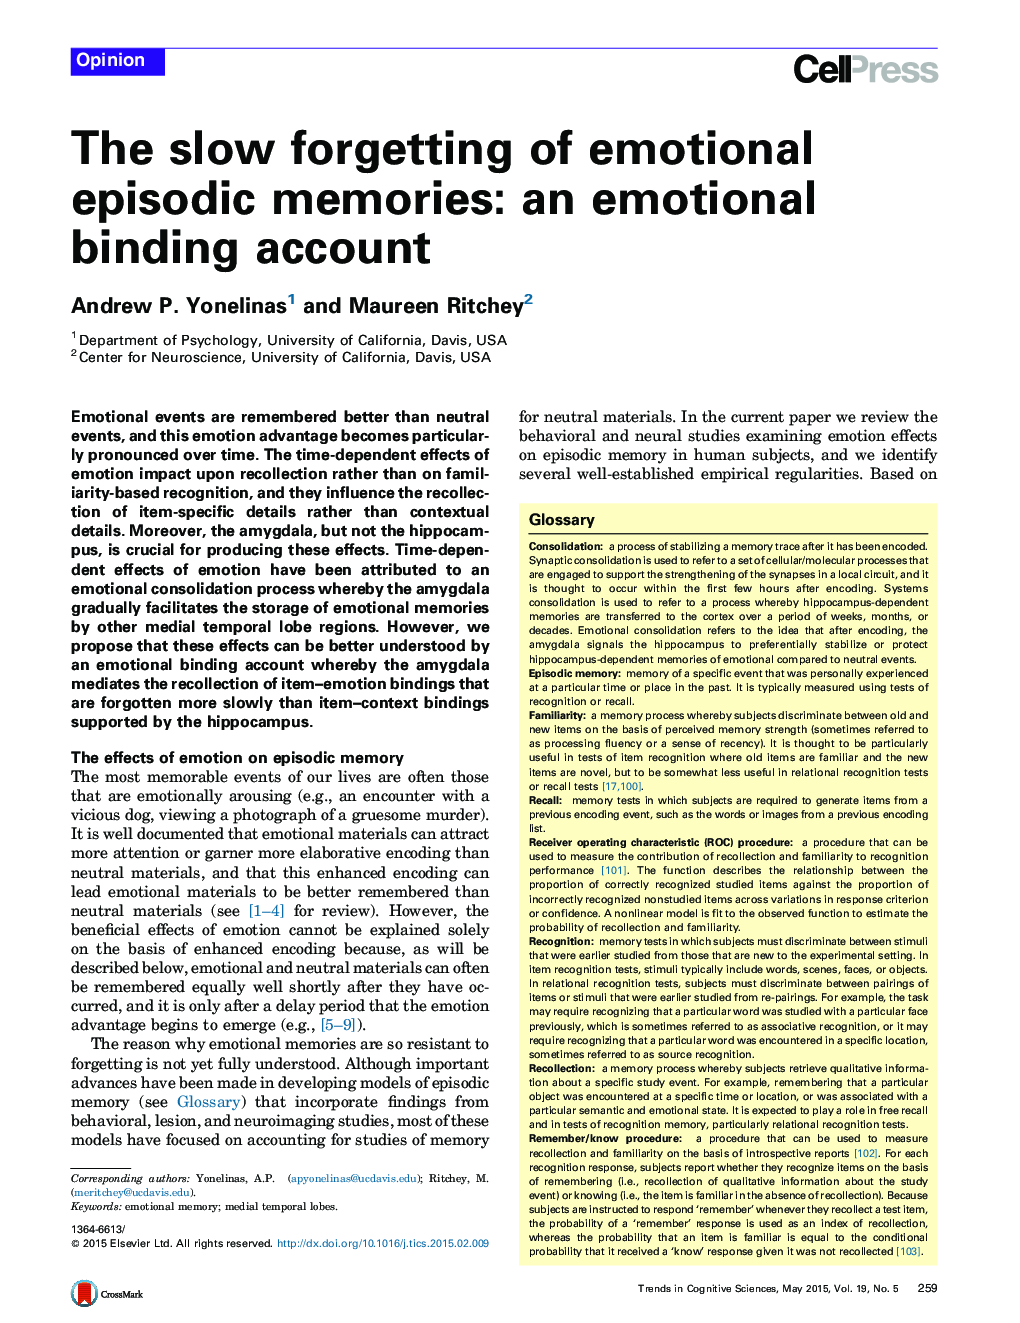 فراموشی آهسته خاطرات اپیزودیک عاطفی: یک حساب اتصال عاطفی